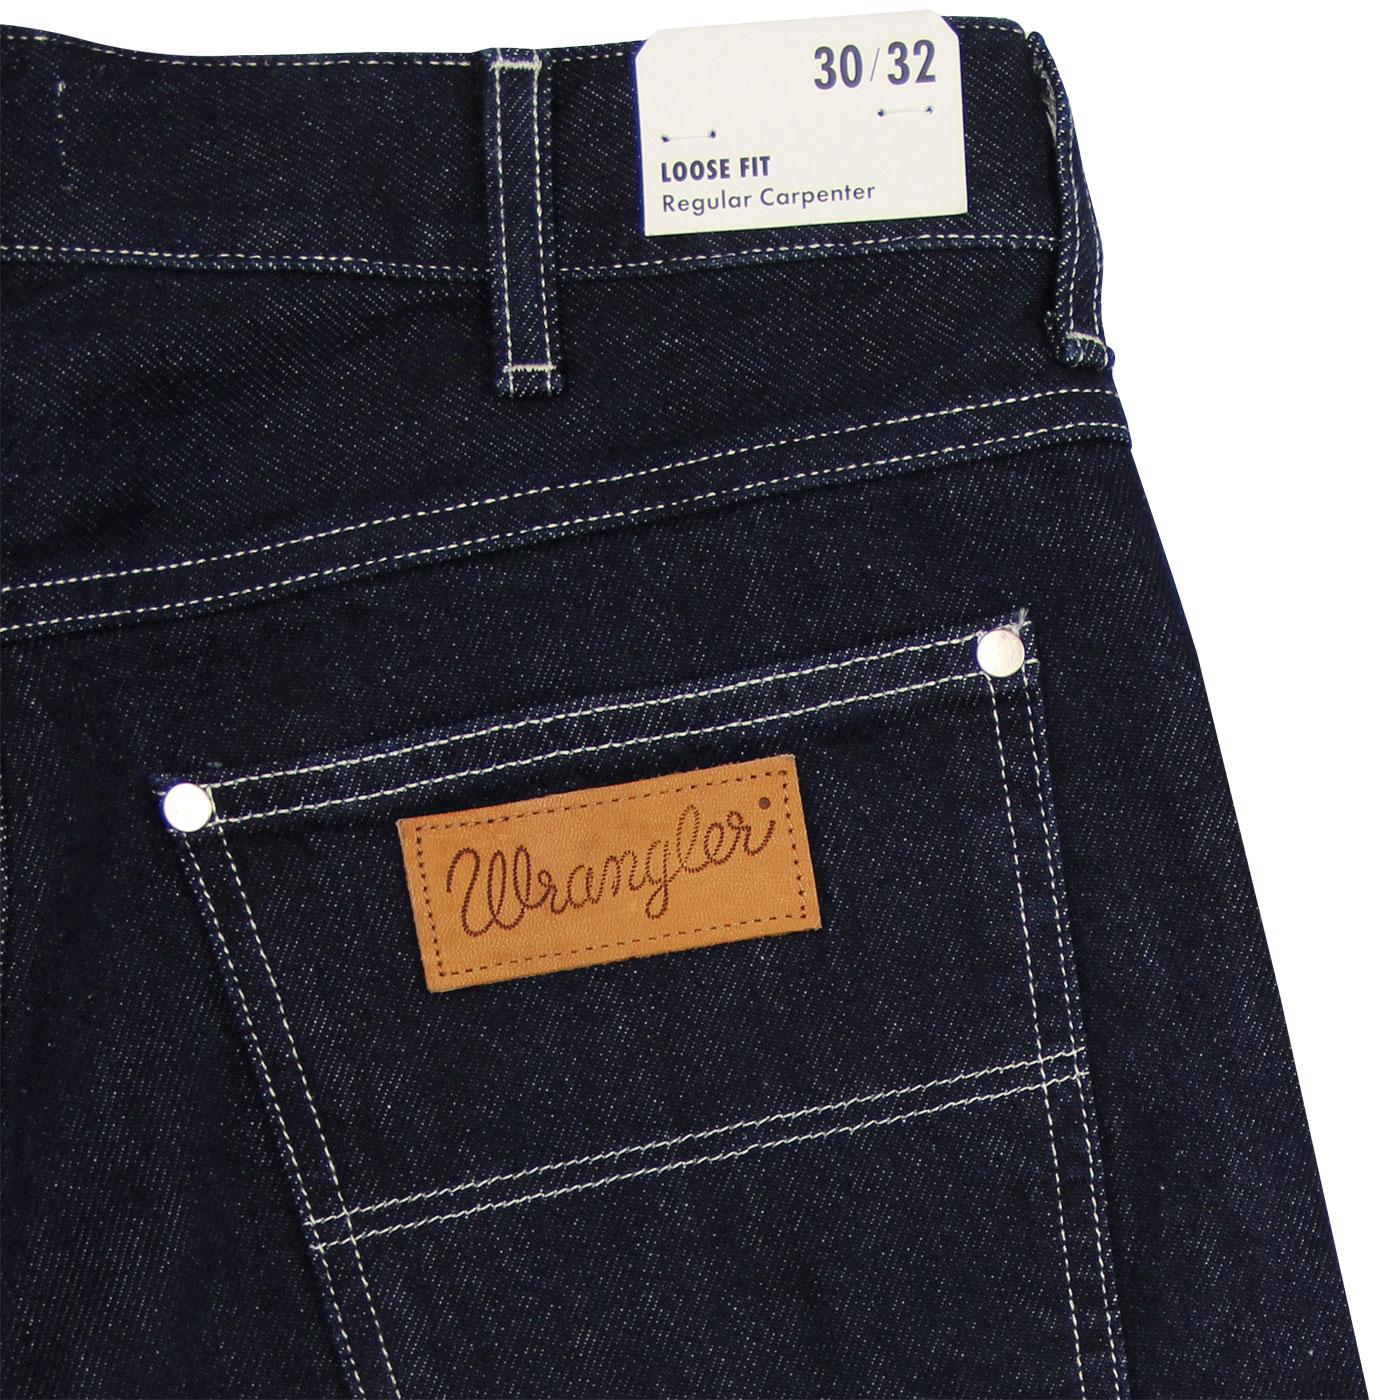 Buy > wrangler carpenter jeans > in stock